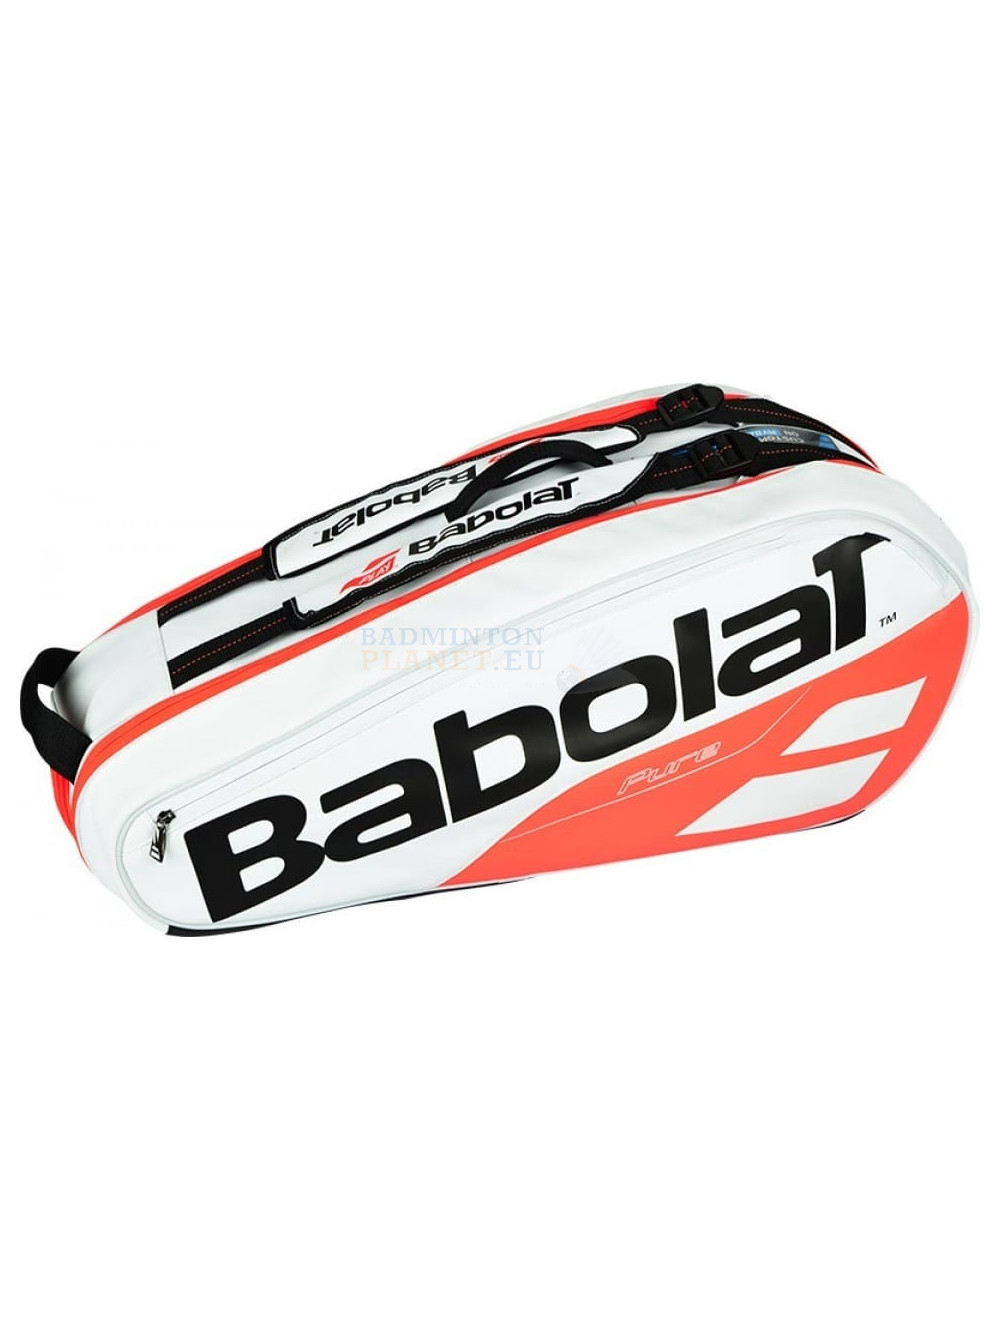 Stijgen Prelude Knorretje Babolat Pure Strike Racket Holder X6 Wit/Rood badminton bag? -  Badmintonplanet.eu